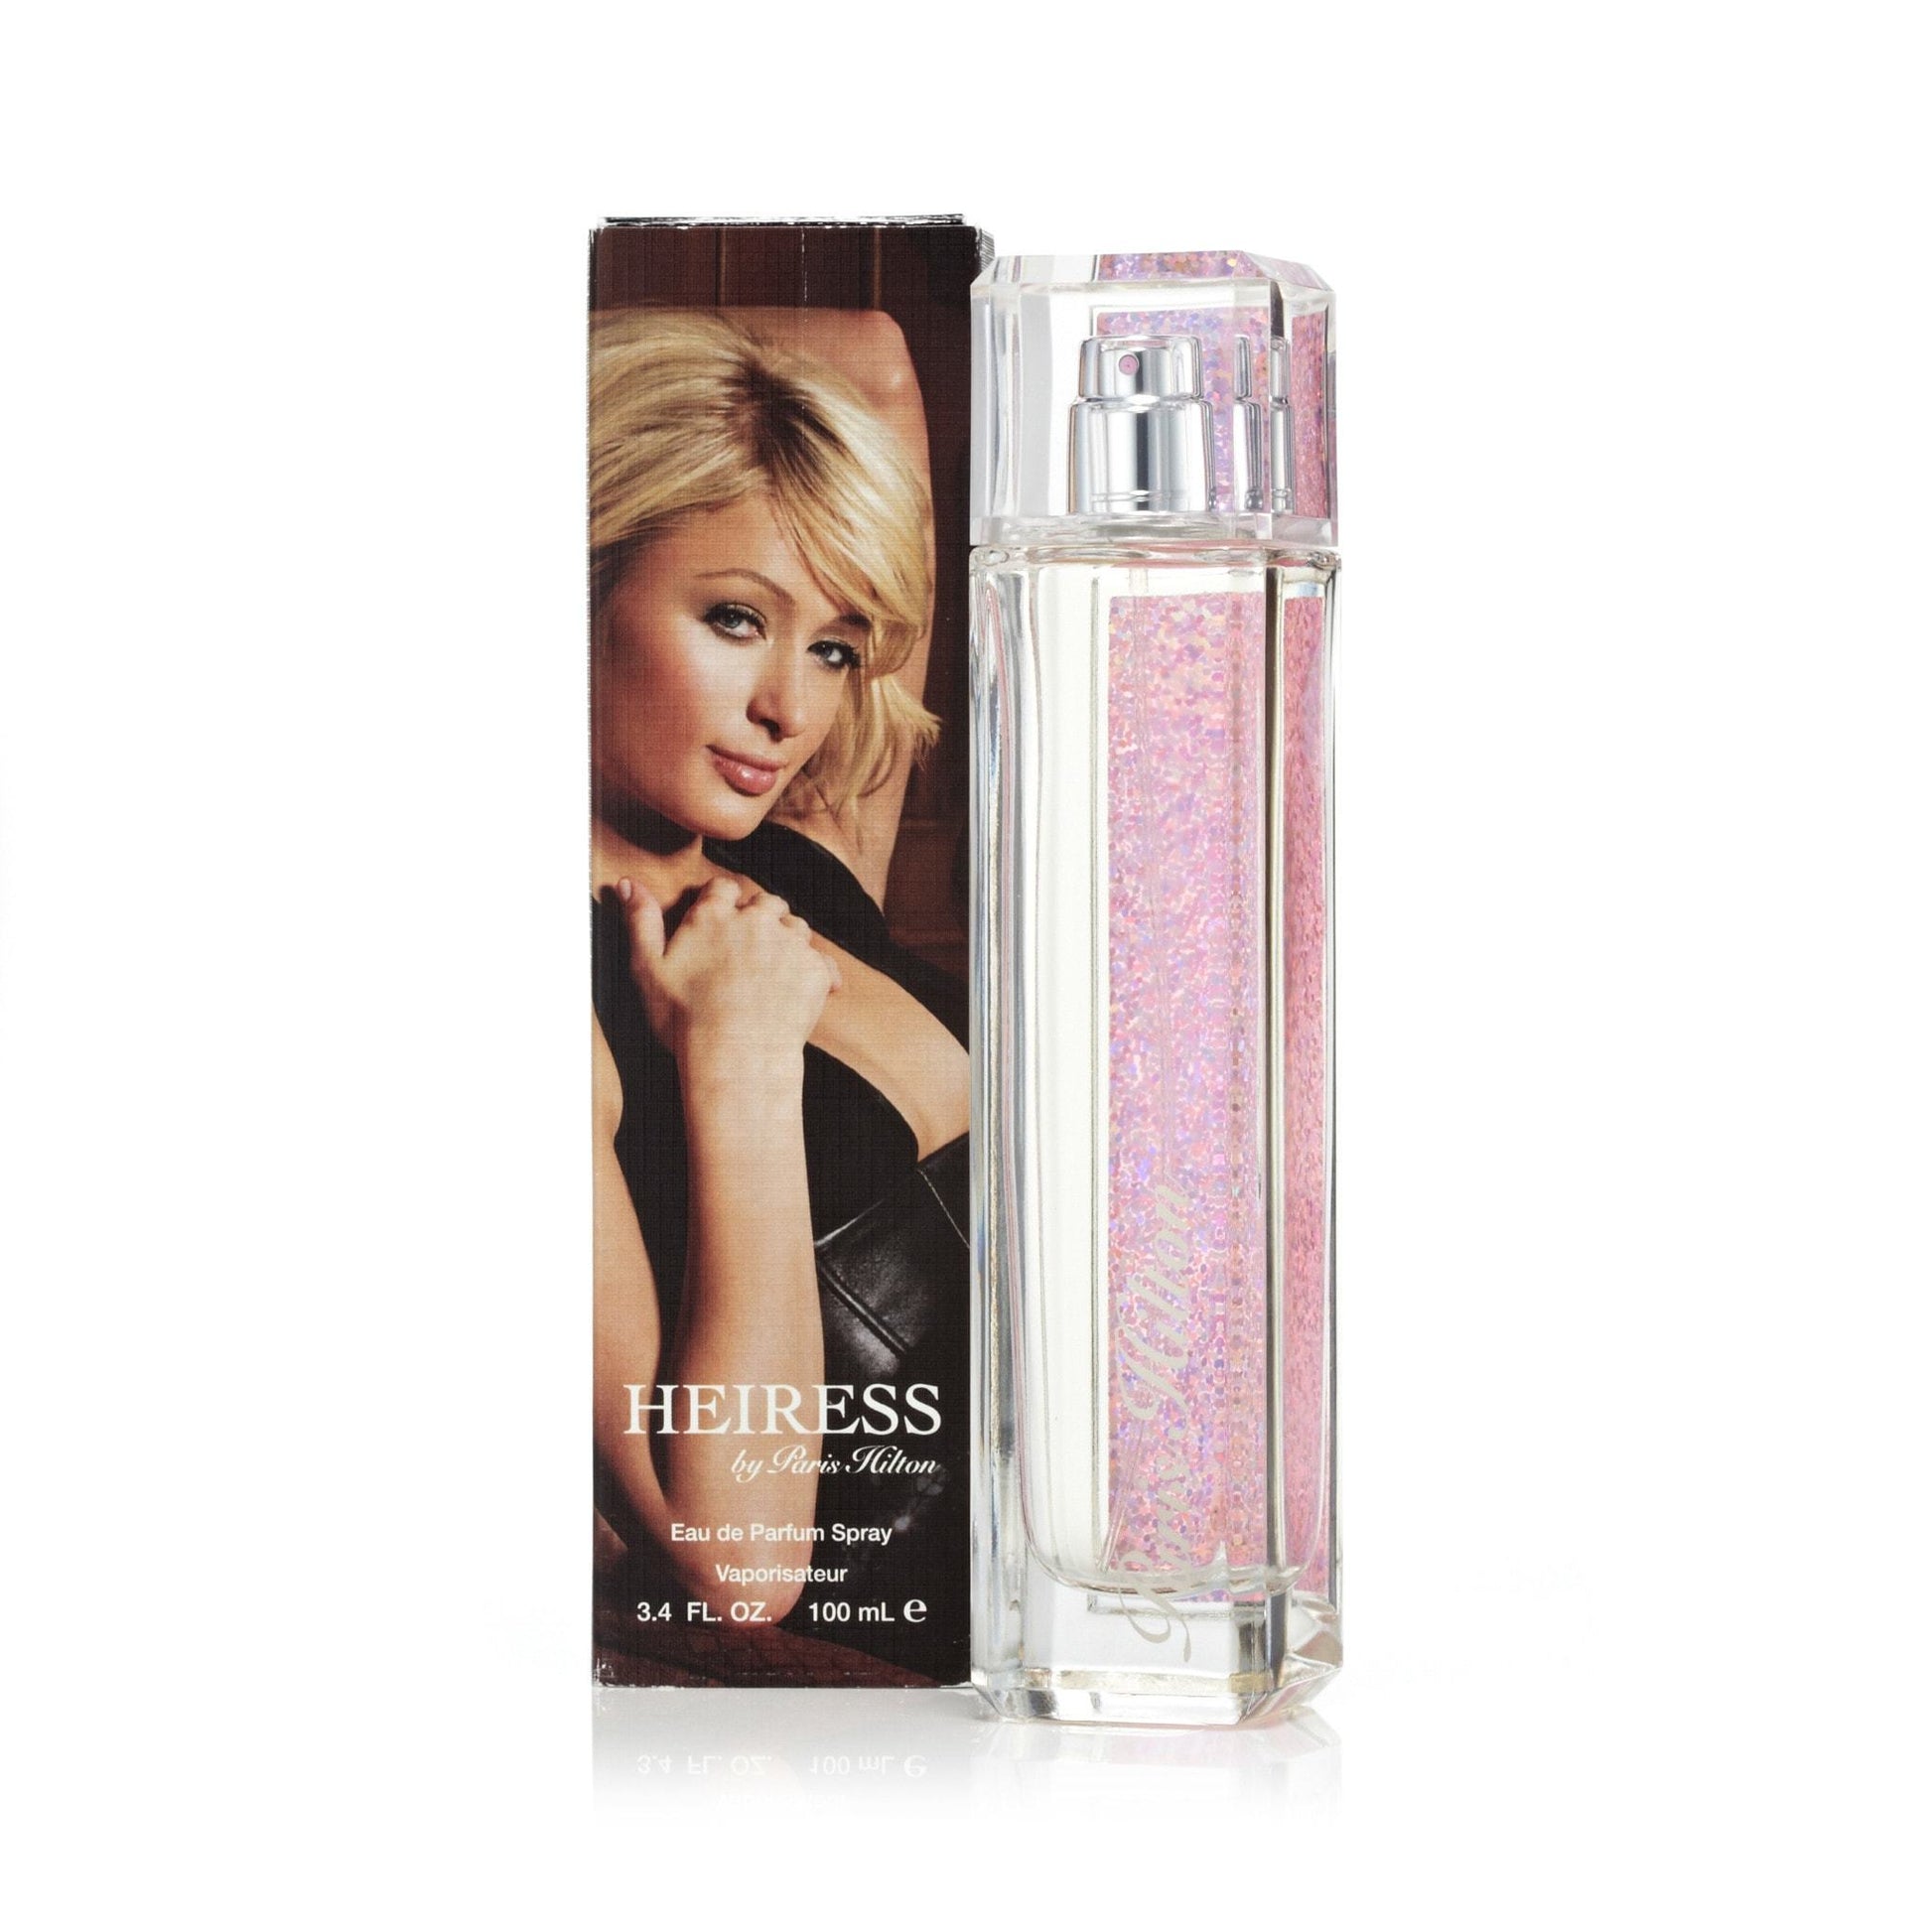 Heiress Eau de Parfum Spray for Women by Paris Hilton, Product image 1